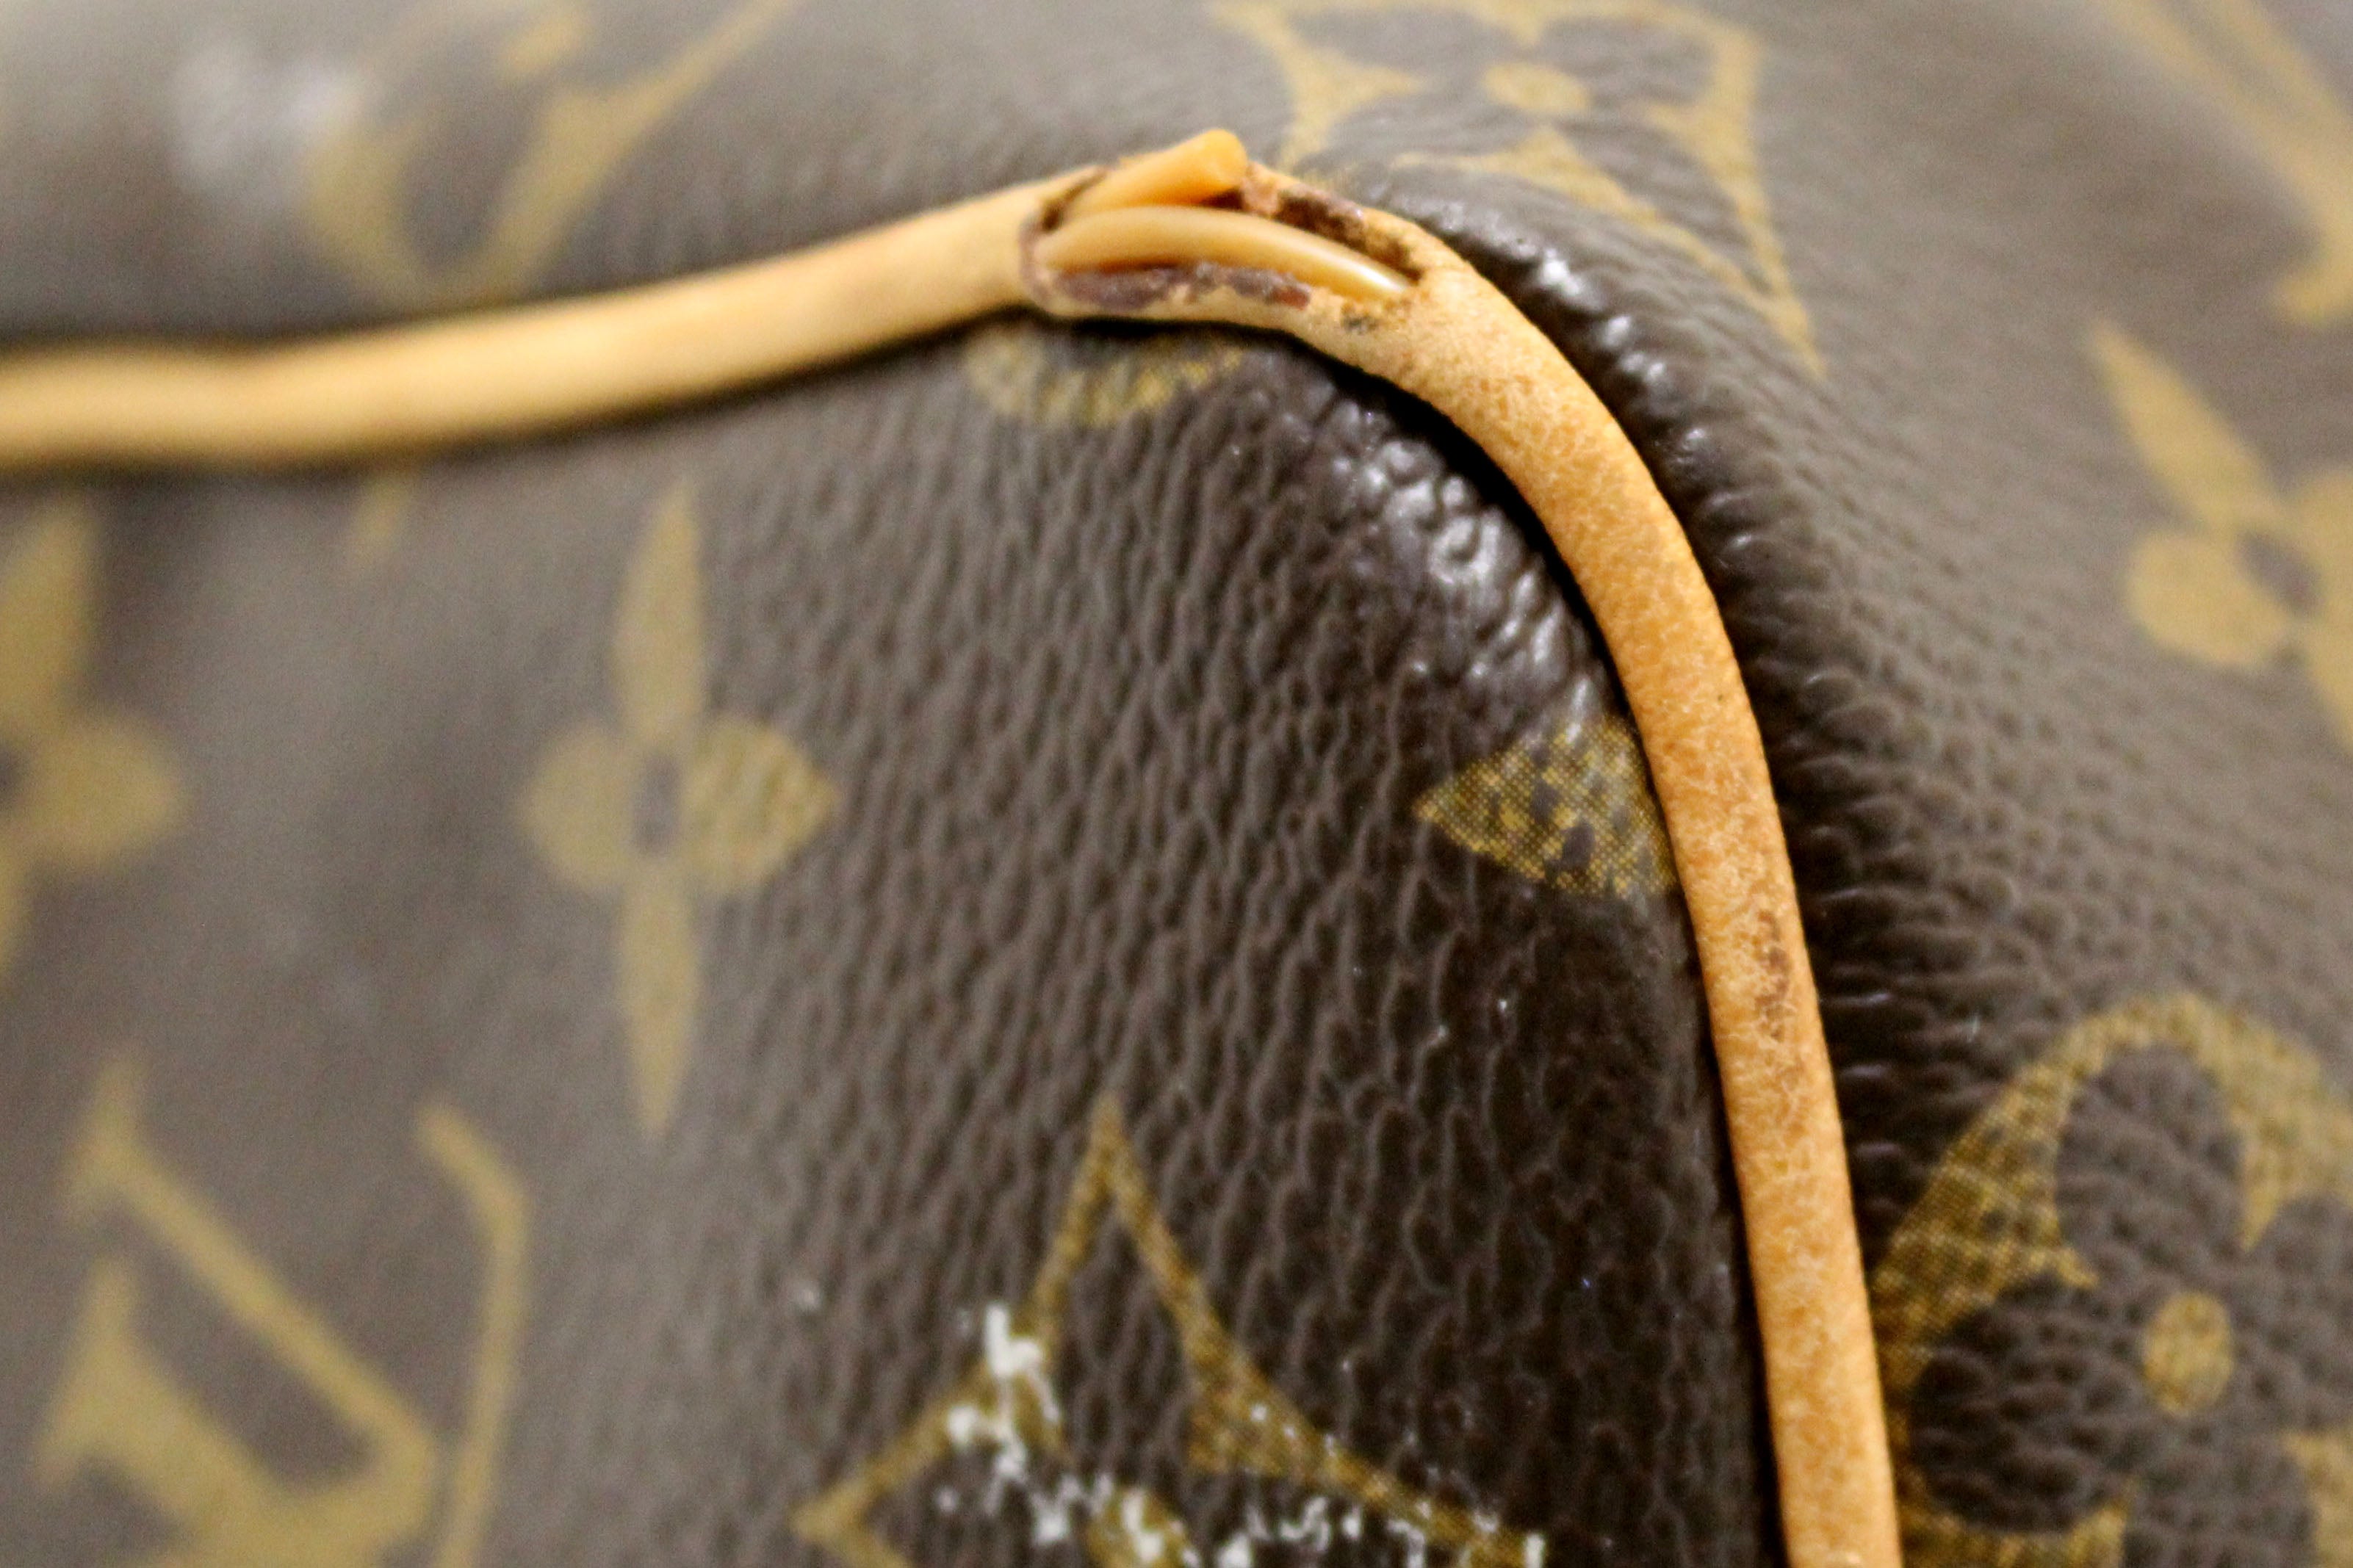 Authentic Louis Vuitton Classic Monogram Speedy 25 Handbag